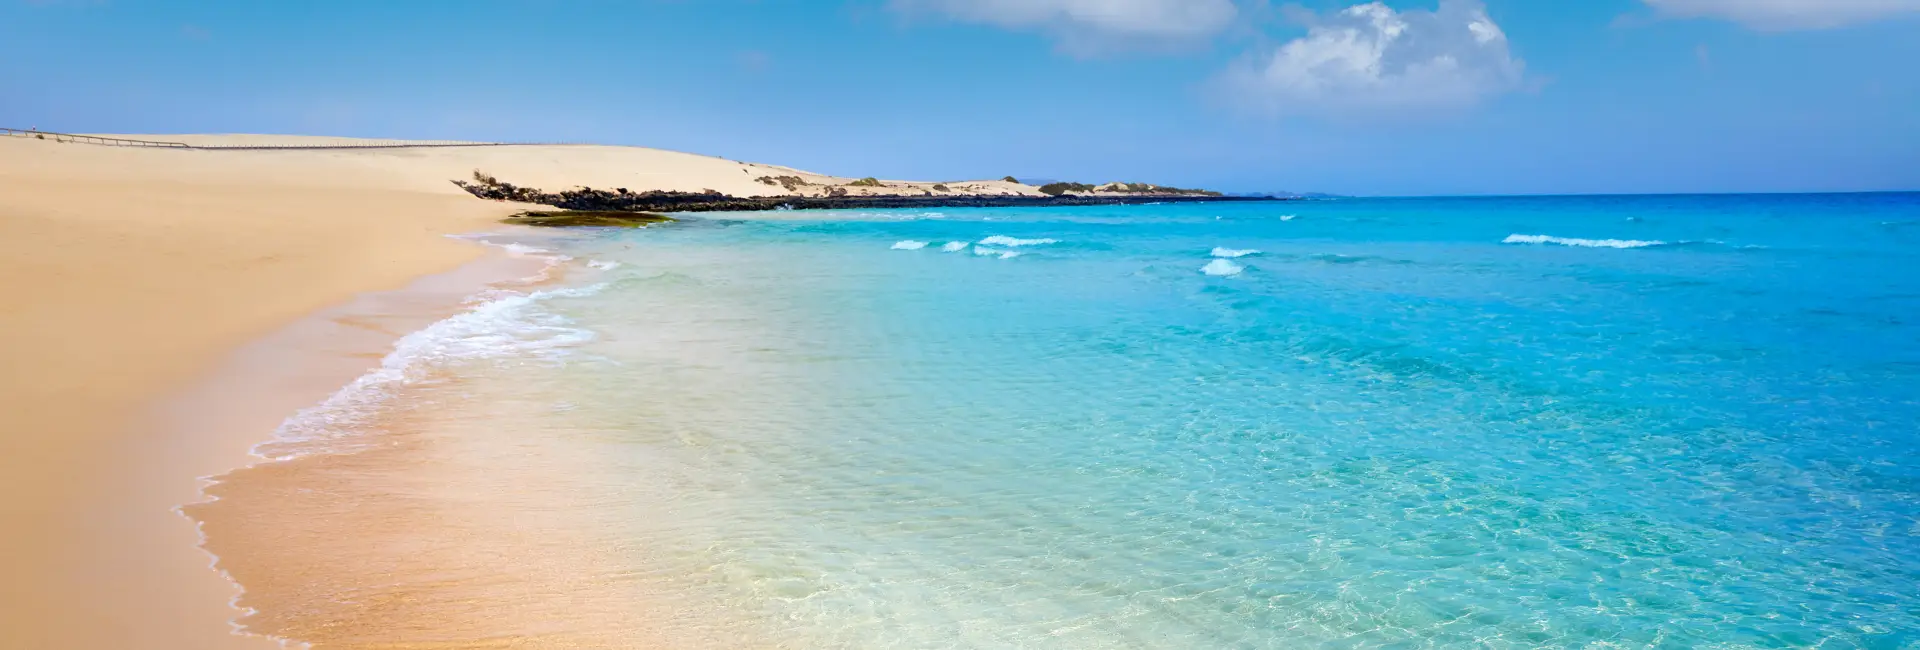 Revelion Insula Fuerteventura